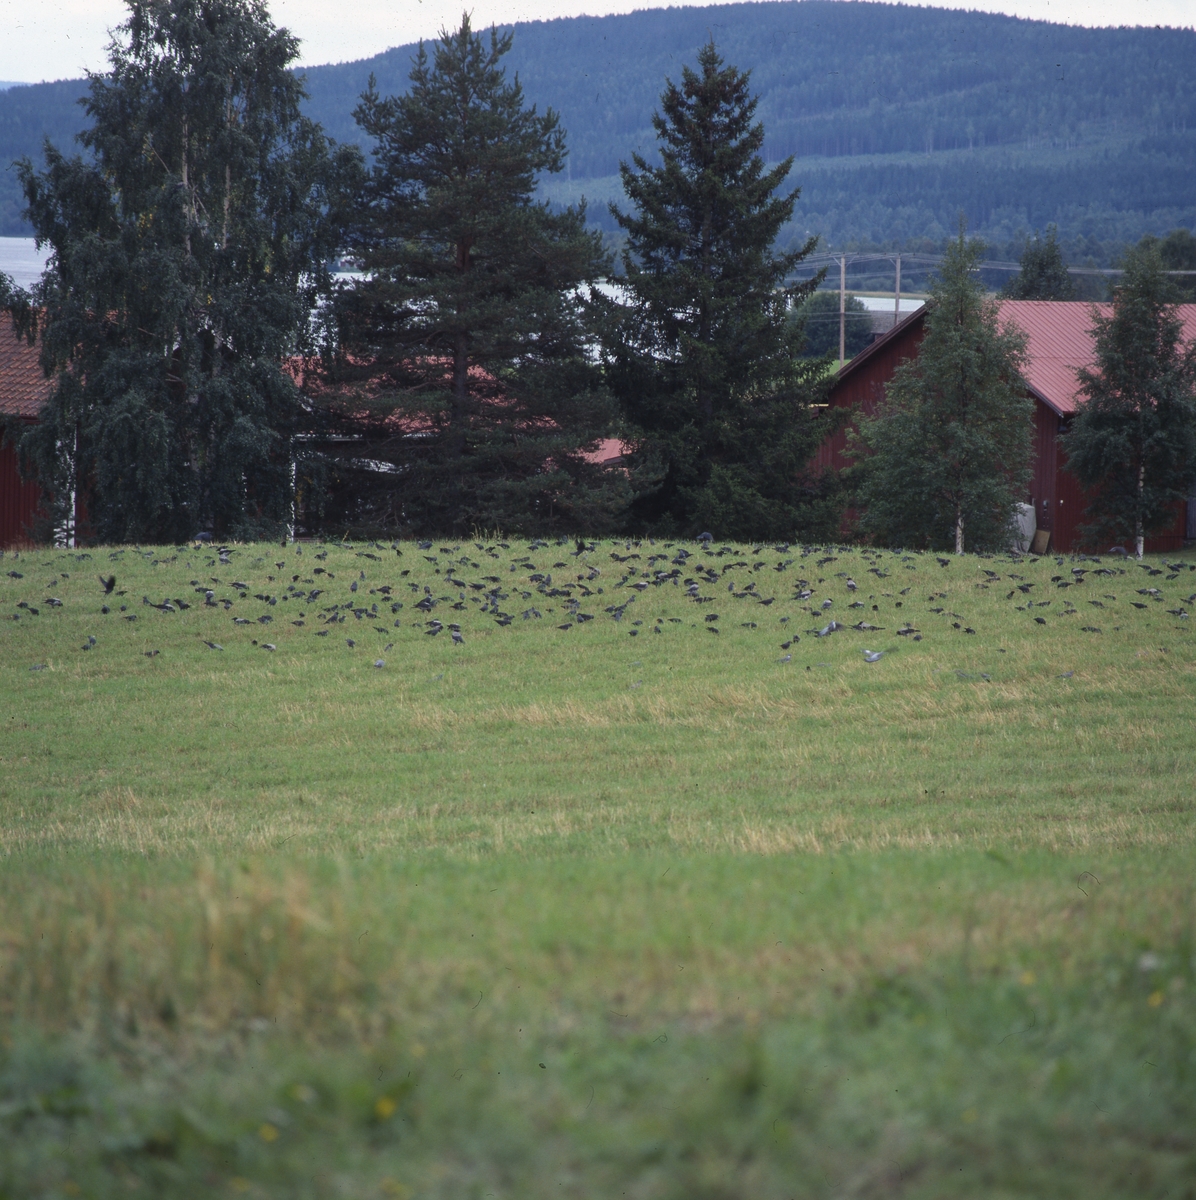 Kajor på en åker i Järvsö september 2001. I bakgrunden syns byggnader, vatten och berg med skog.